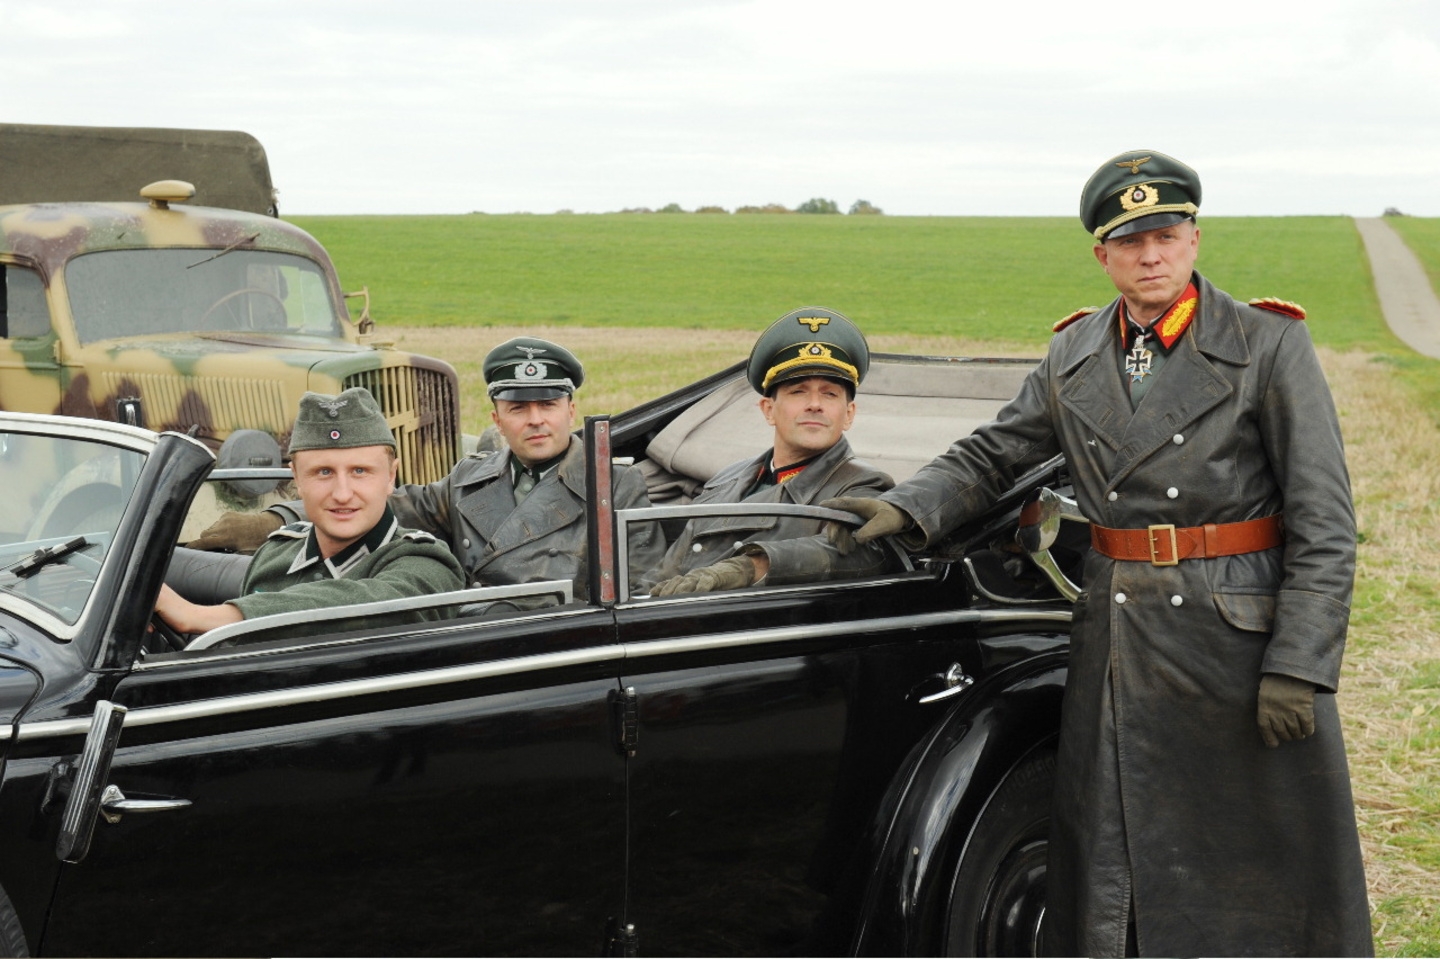 Rommel (AT) / Michael Kranz / Robert Schupp / Harry Blank / Ulrich Tukur